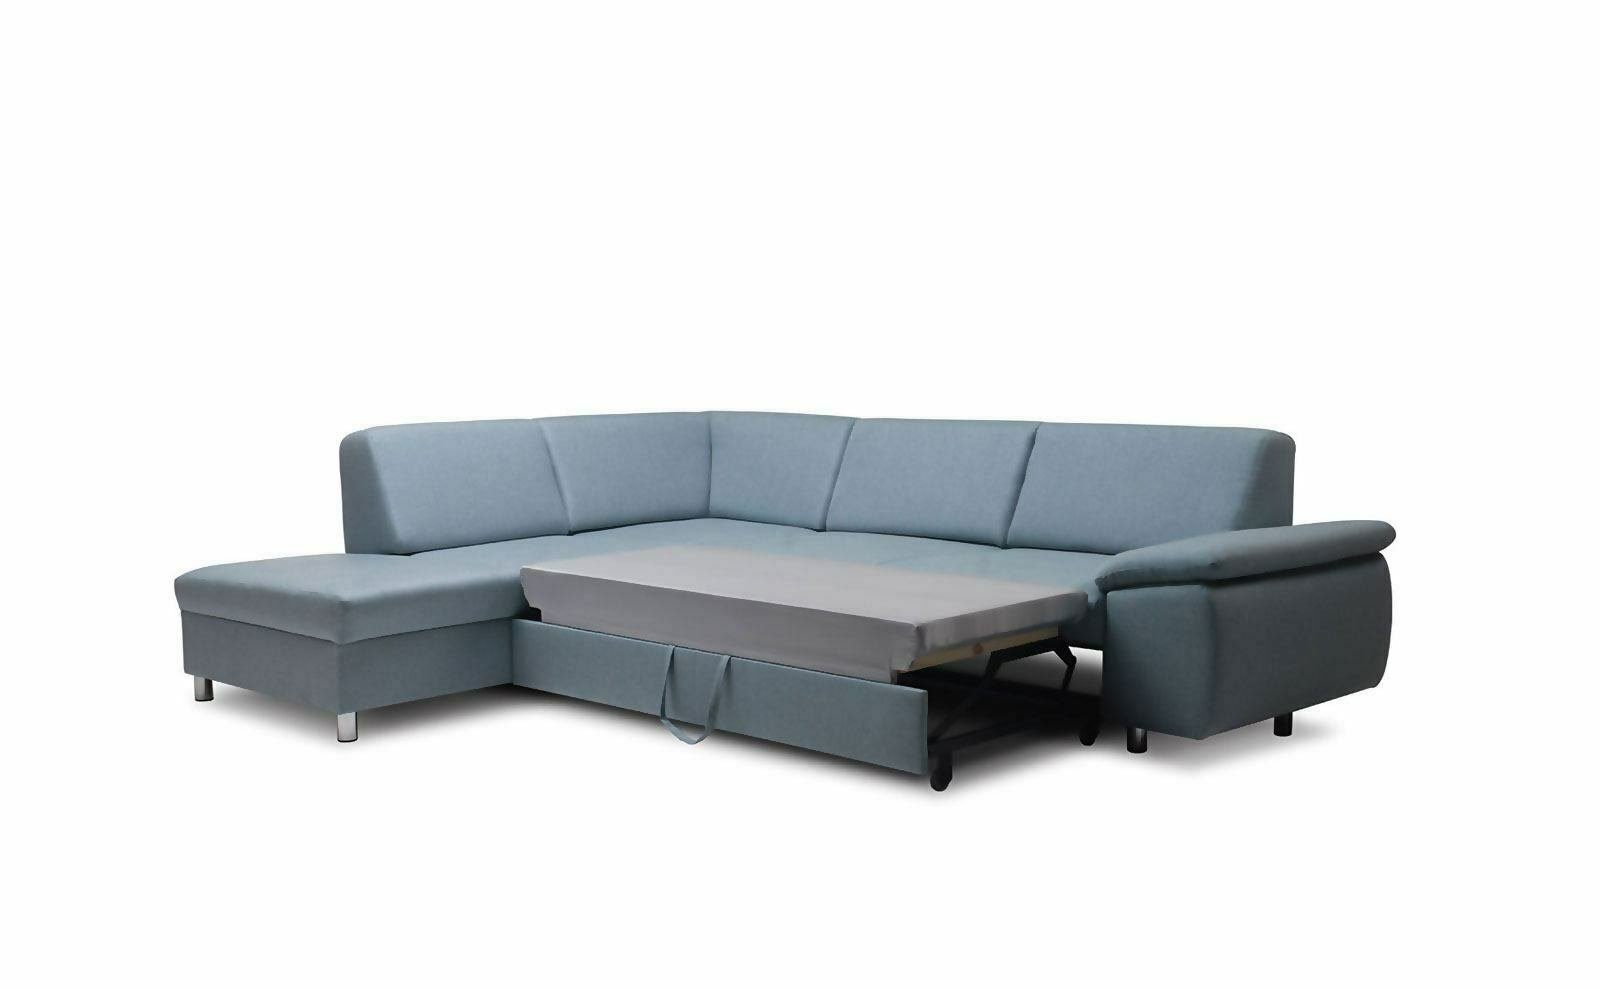 JVmoebel Ecksofa Blaues Modernes Schlasofa Neu, Made Couch in Sitzecke Europe Polster Ecksofa